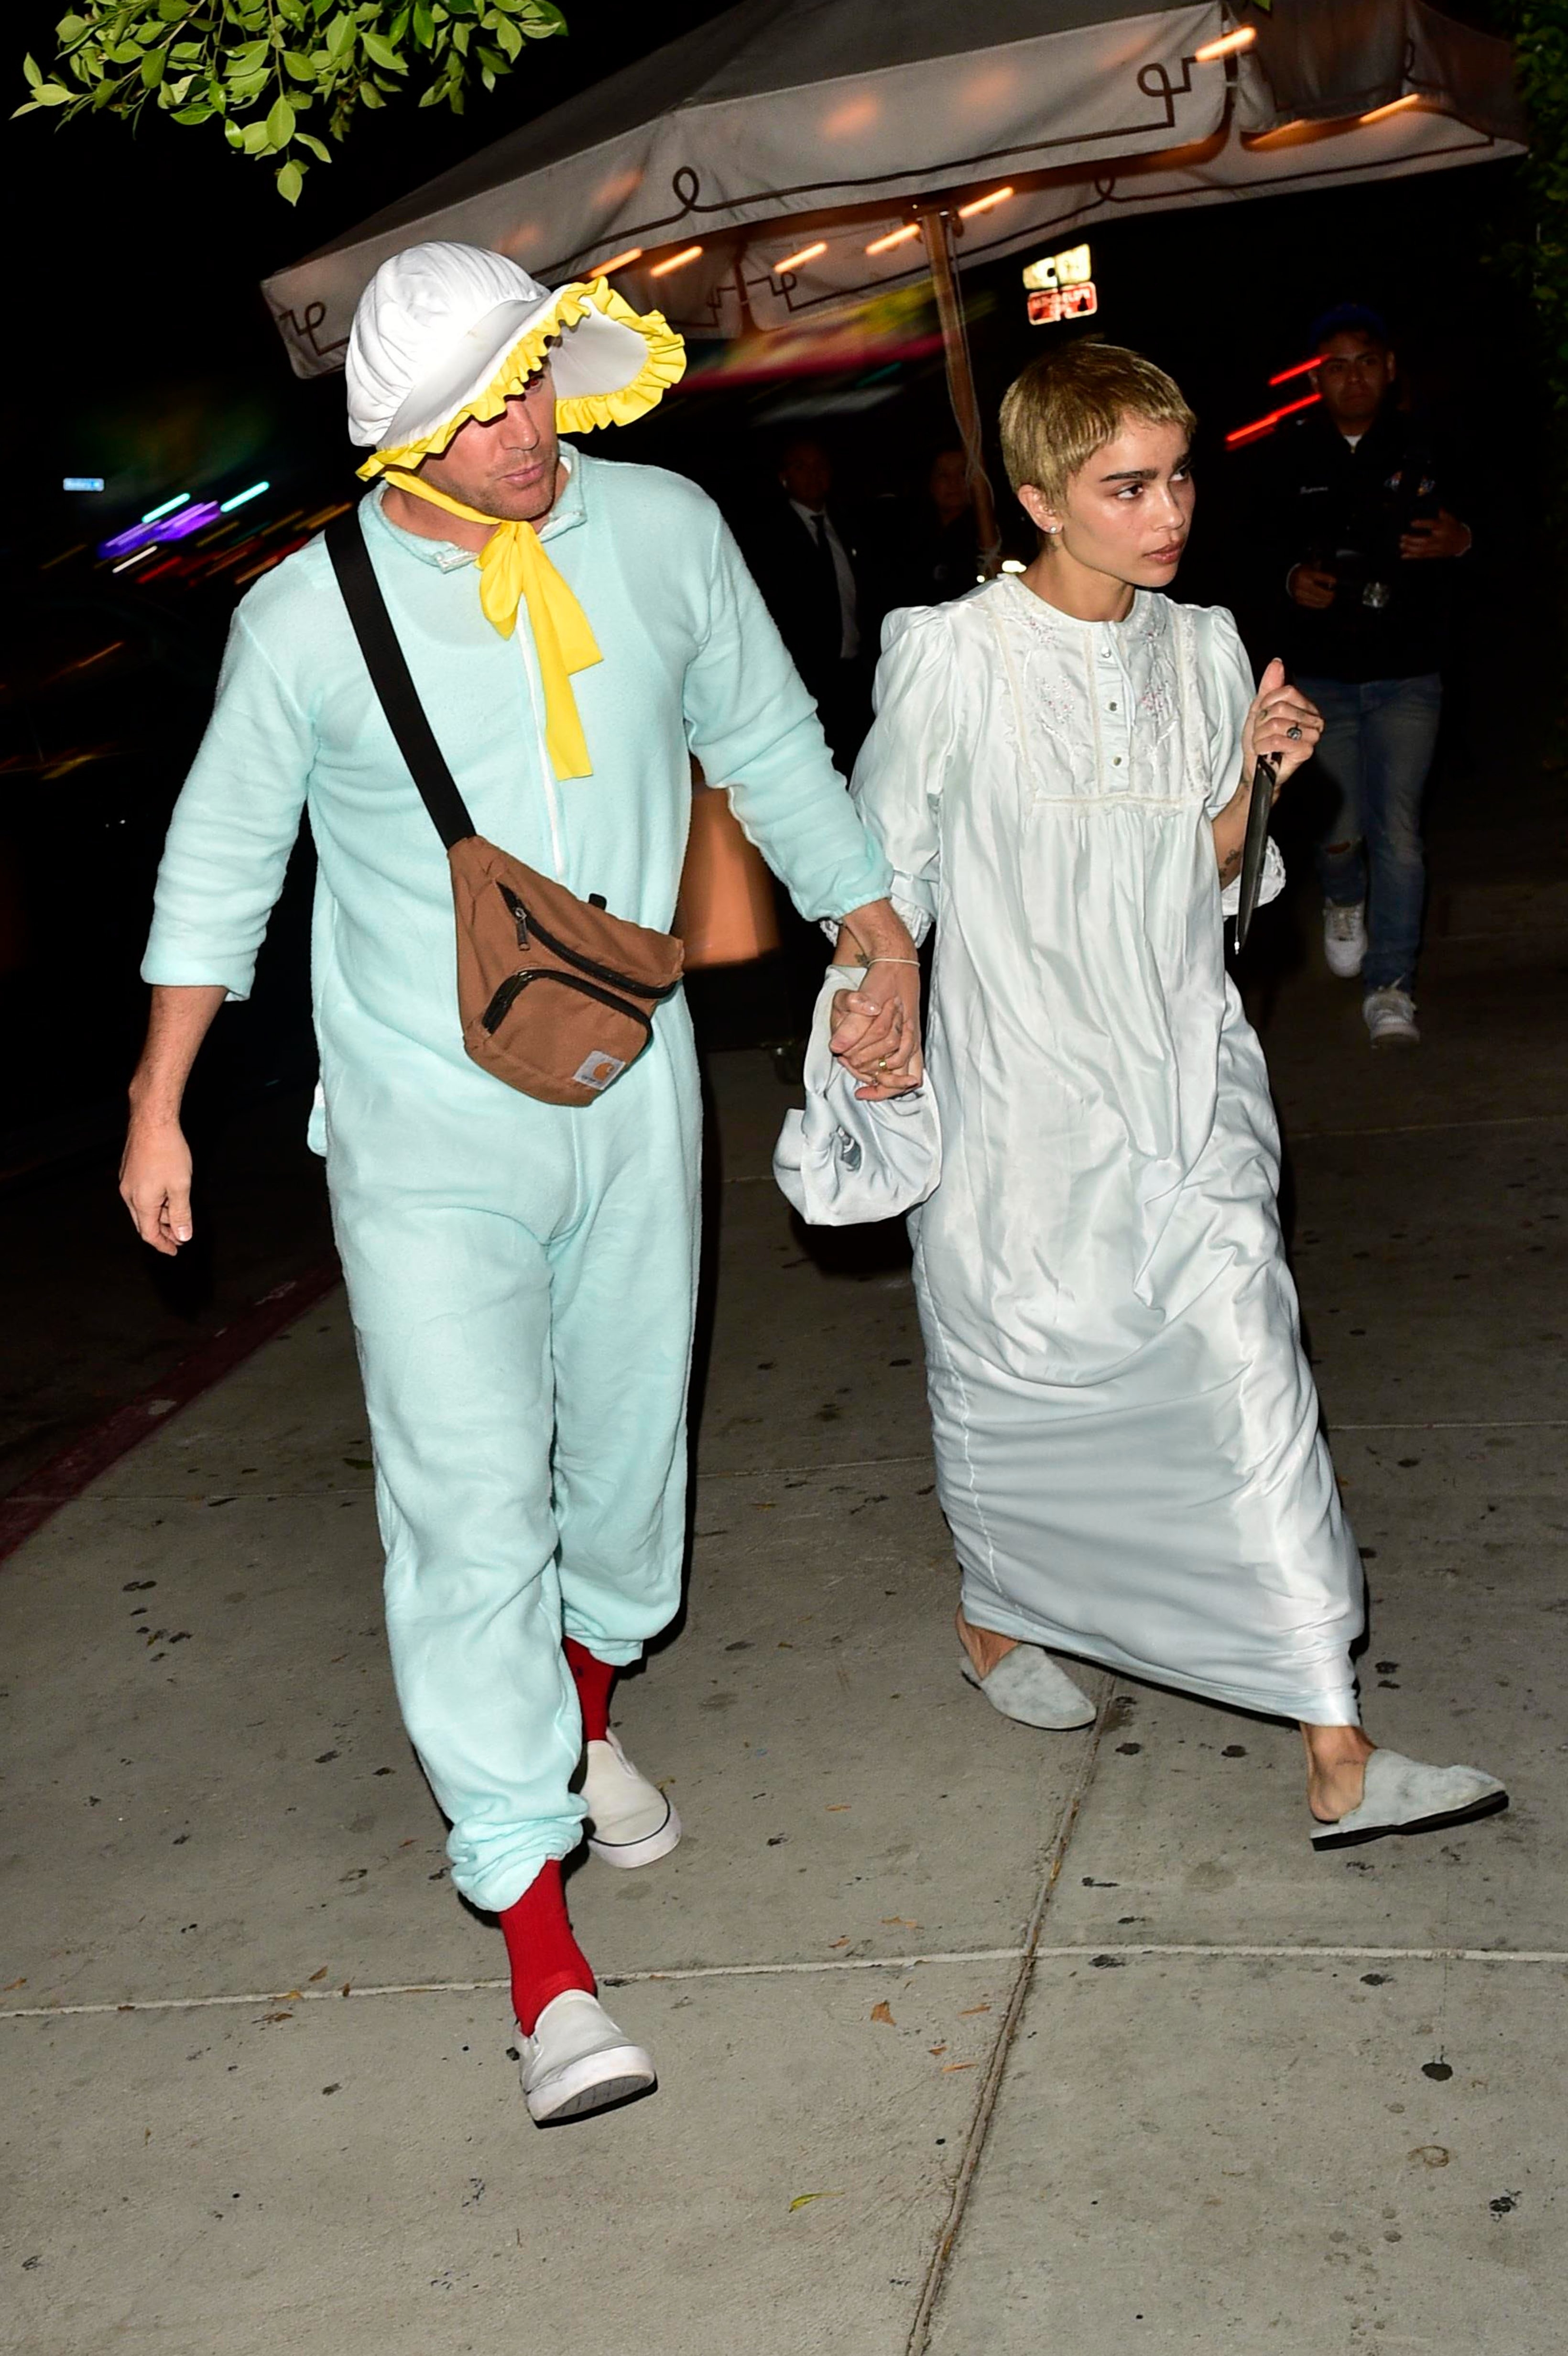 Channing Tatum and Zoe Kravitz in Halloween costumes